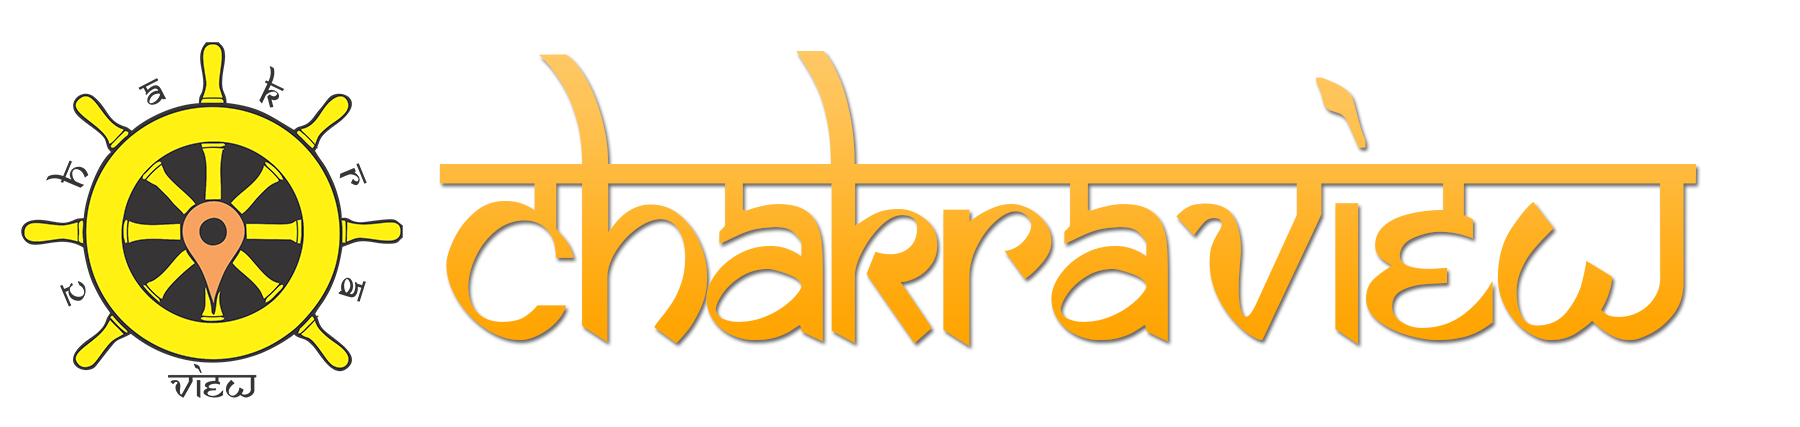 chakraview logo